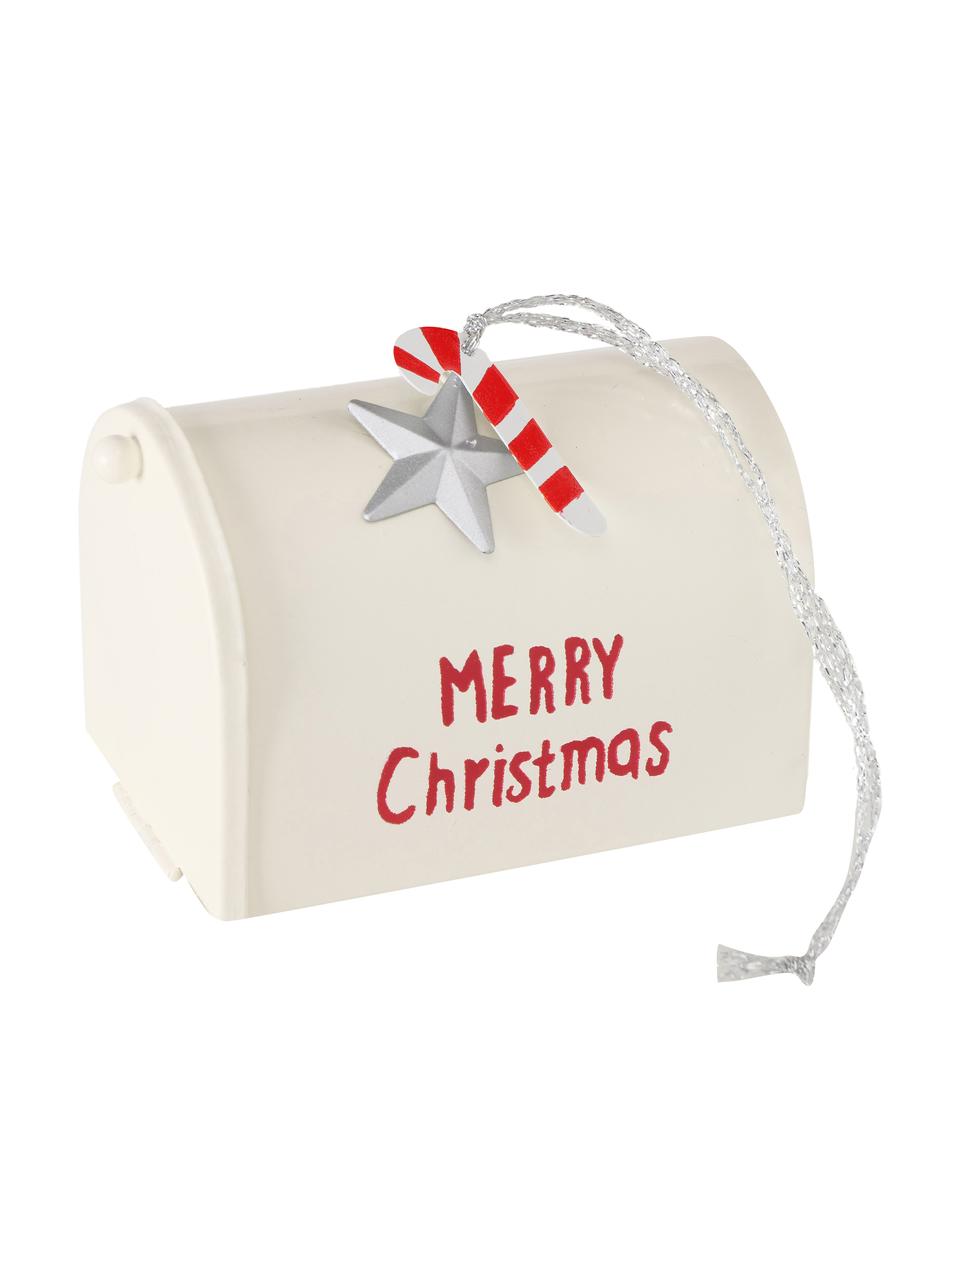 Komplet ozdób choinkowych Santa's Mailbox, 4 elem., Metal lakierowany, poliester, Czerwony, biały, odcienie srebrnego, S 9 x W 7 cm